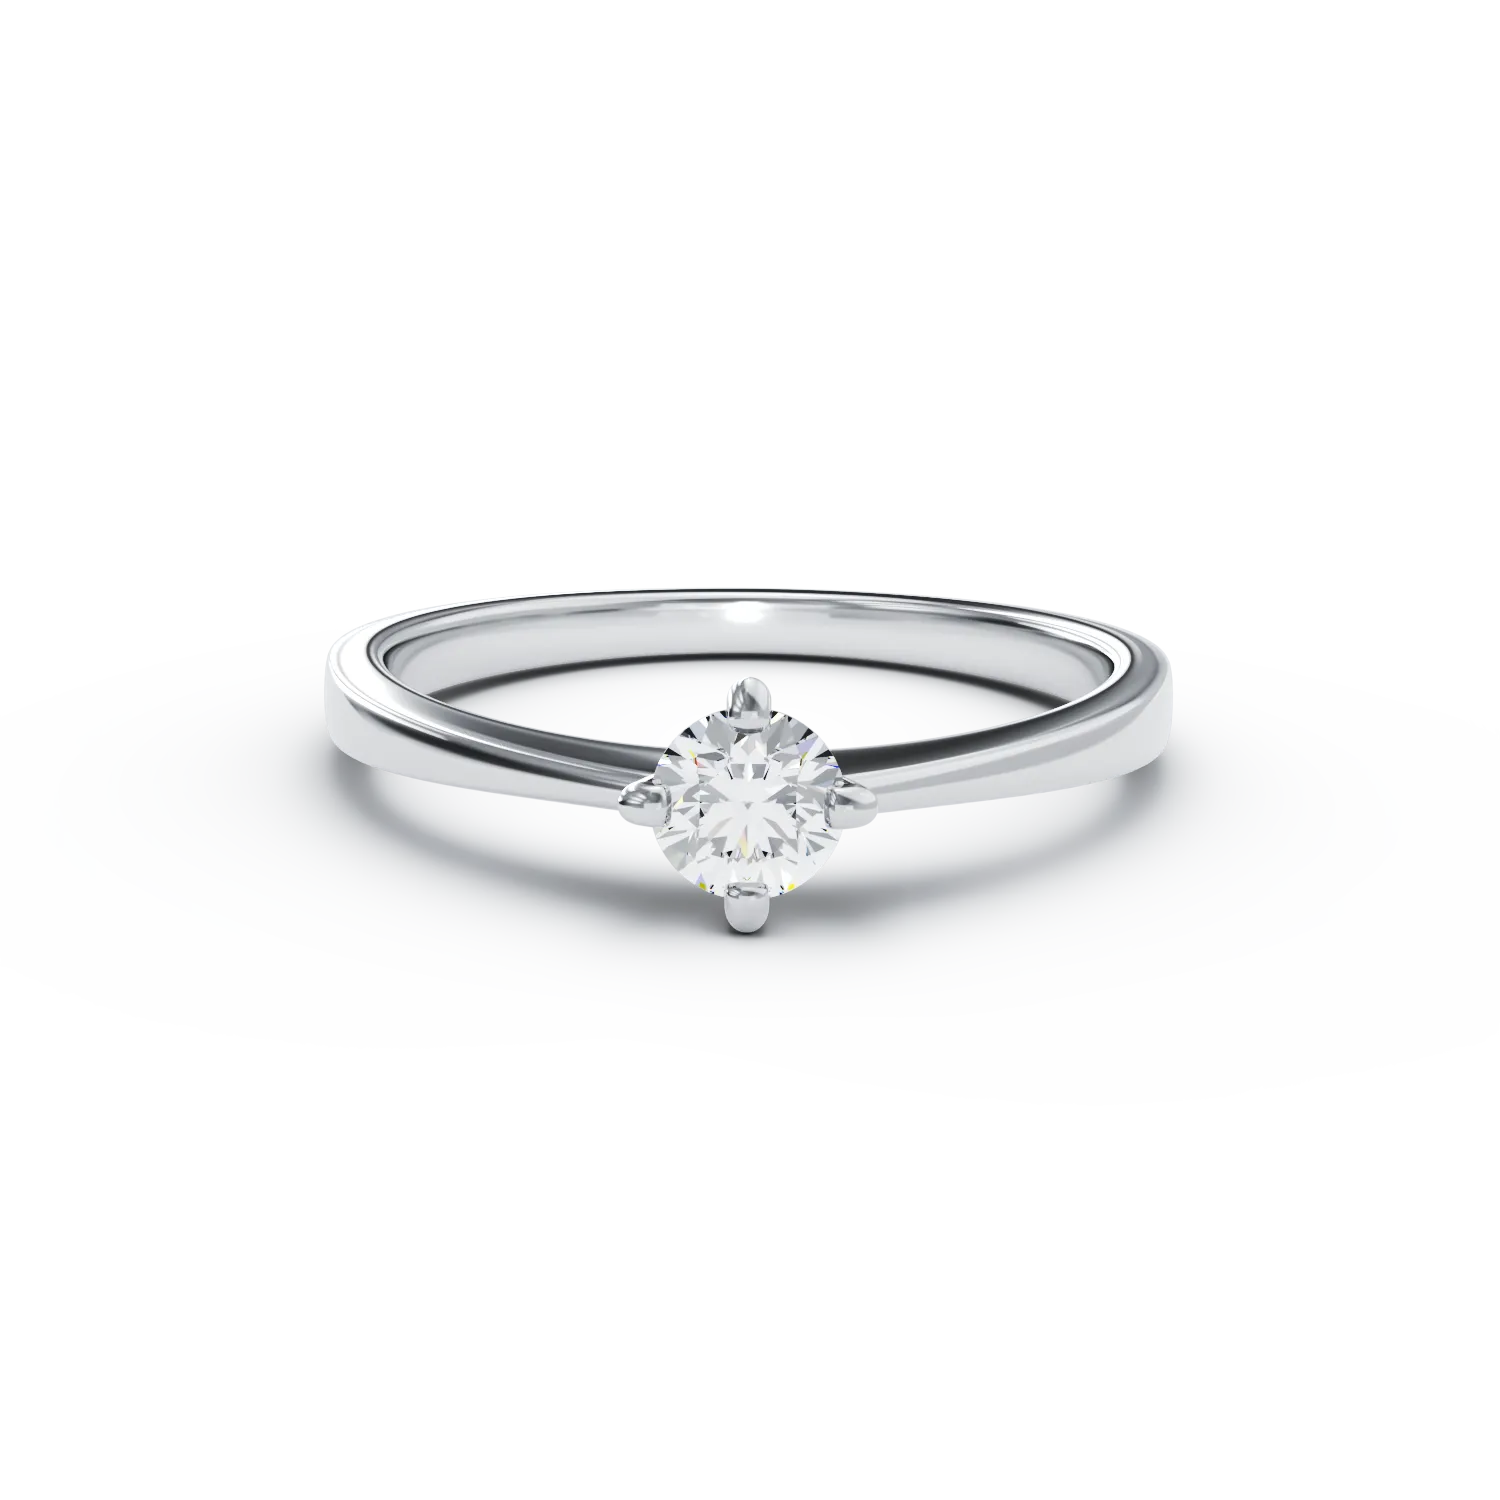 Inel de logodna din aur alb de 18K cu un diamant solitaire de 0.305ct